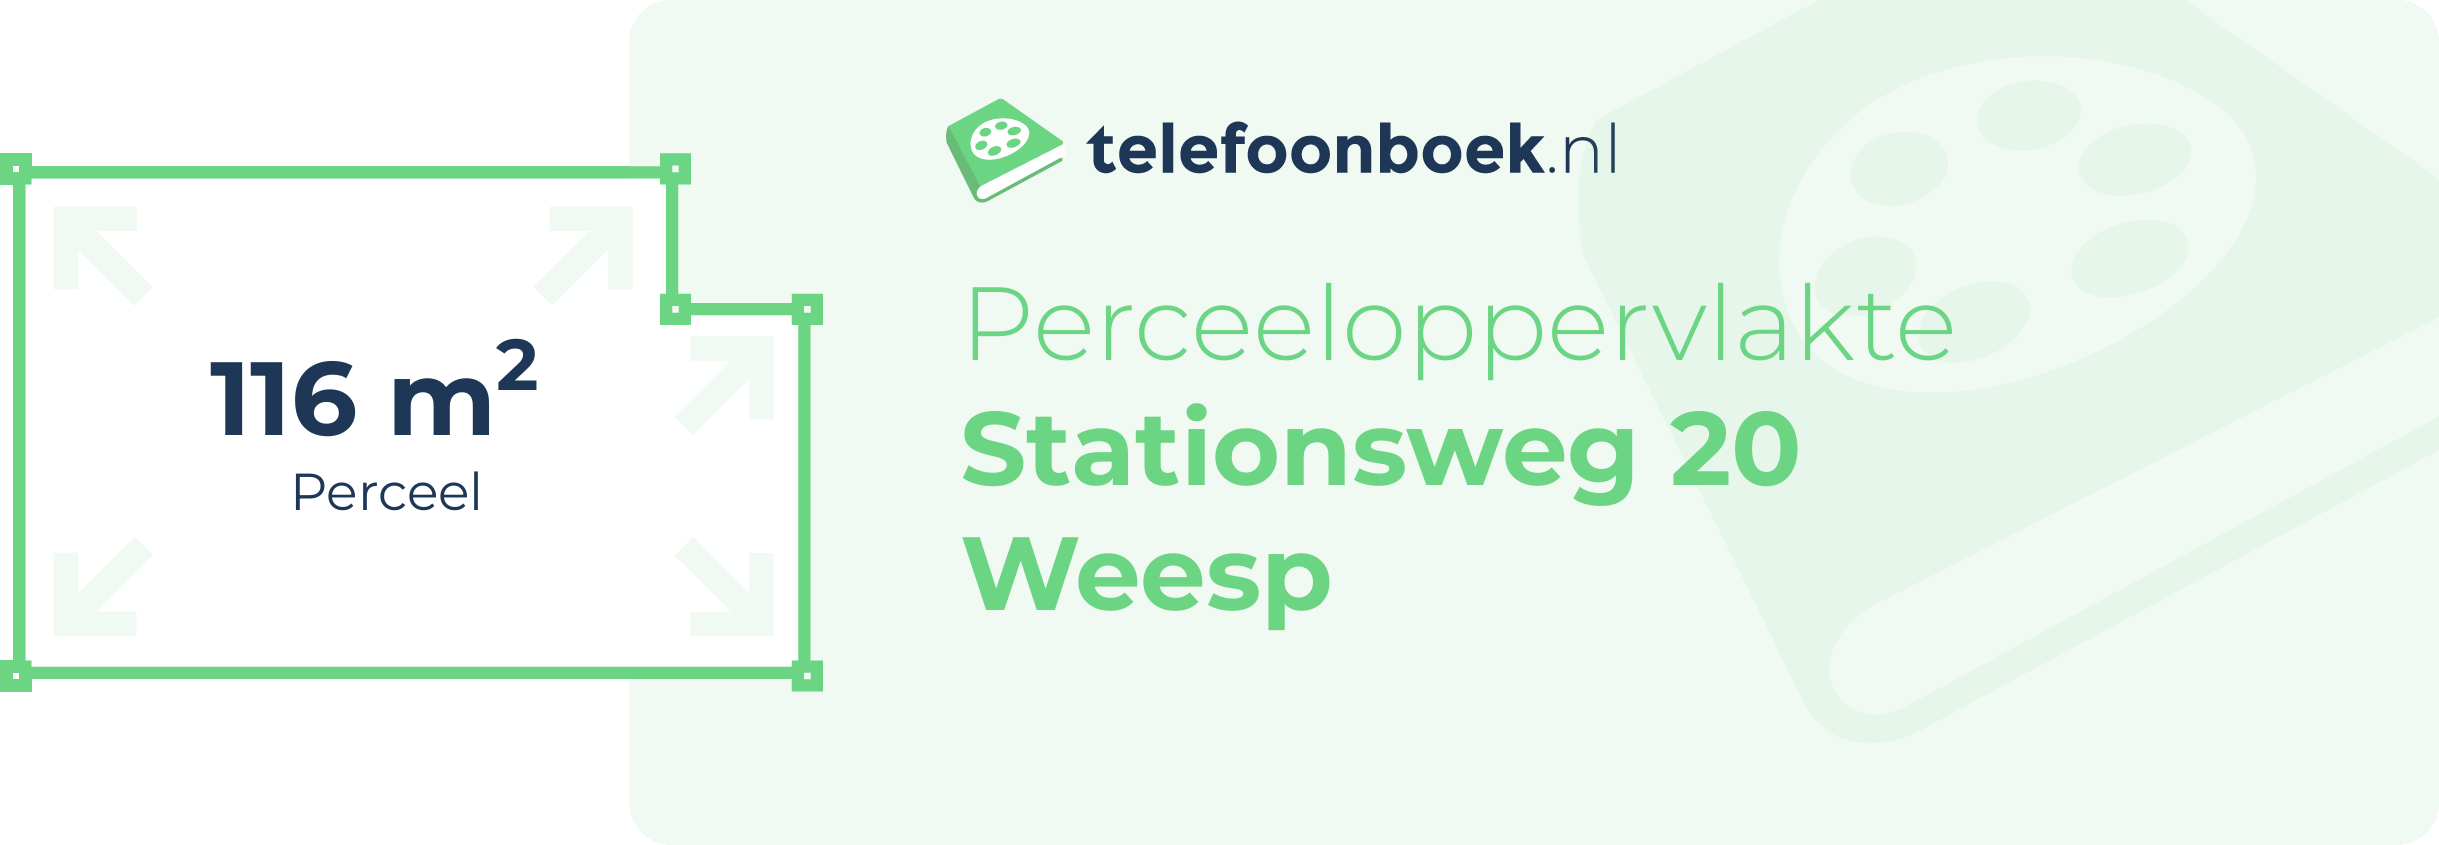 Perceeloppervlakte Stationsweg 20 Weesp